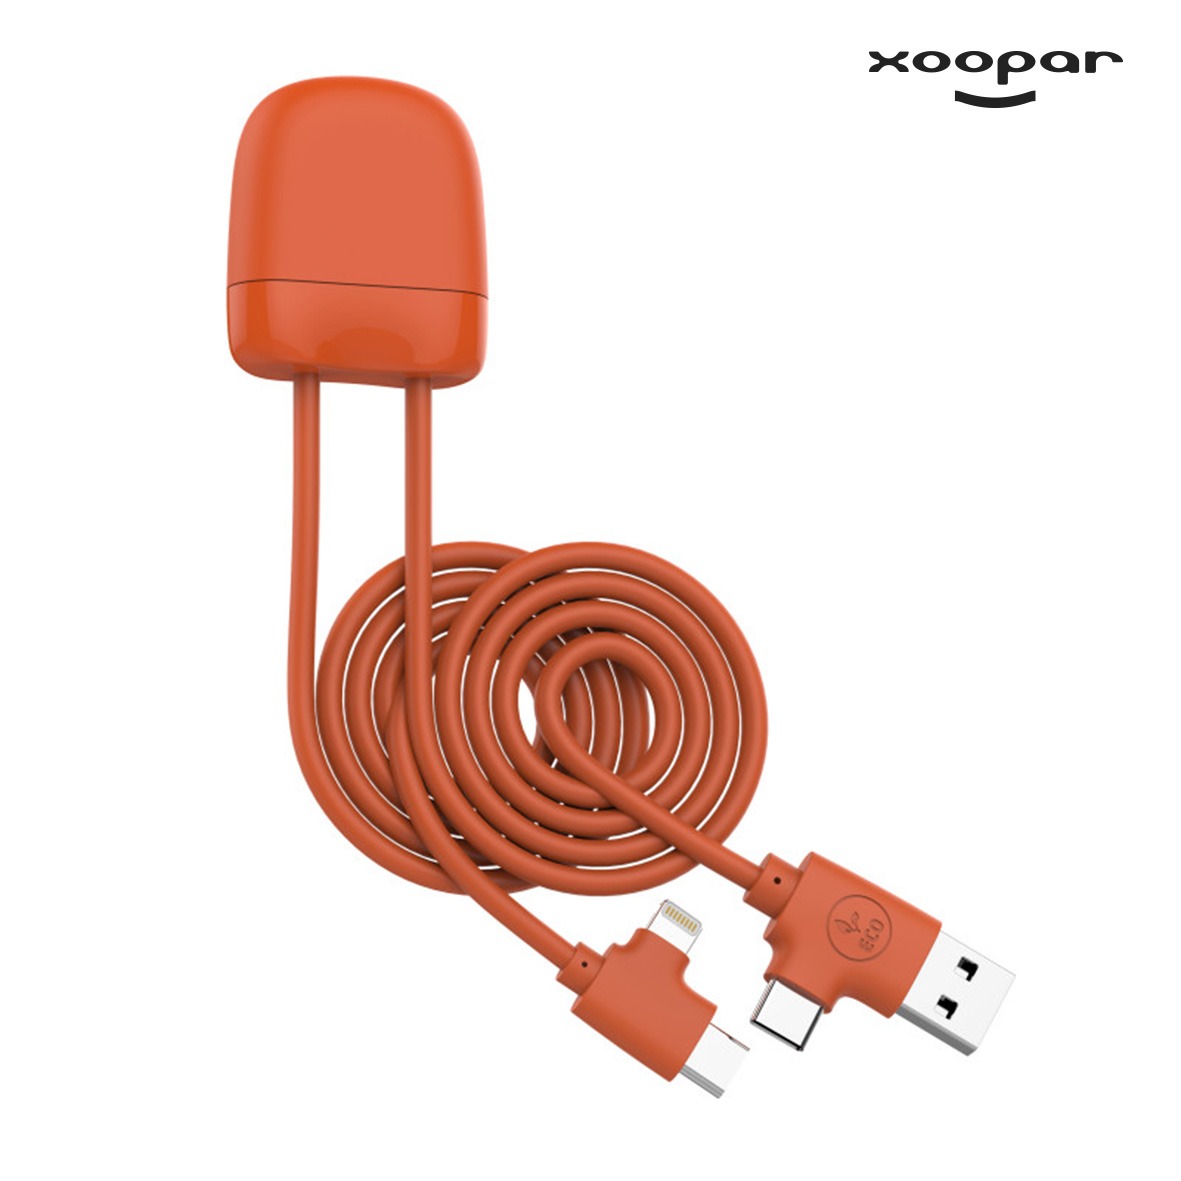 Cable multi connectiques Ice C Xoopar eco personnalise-3